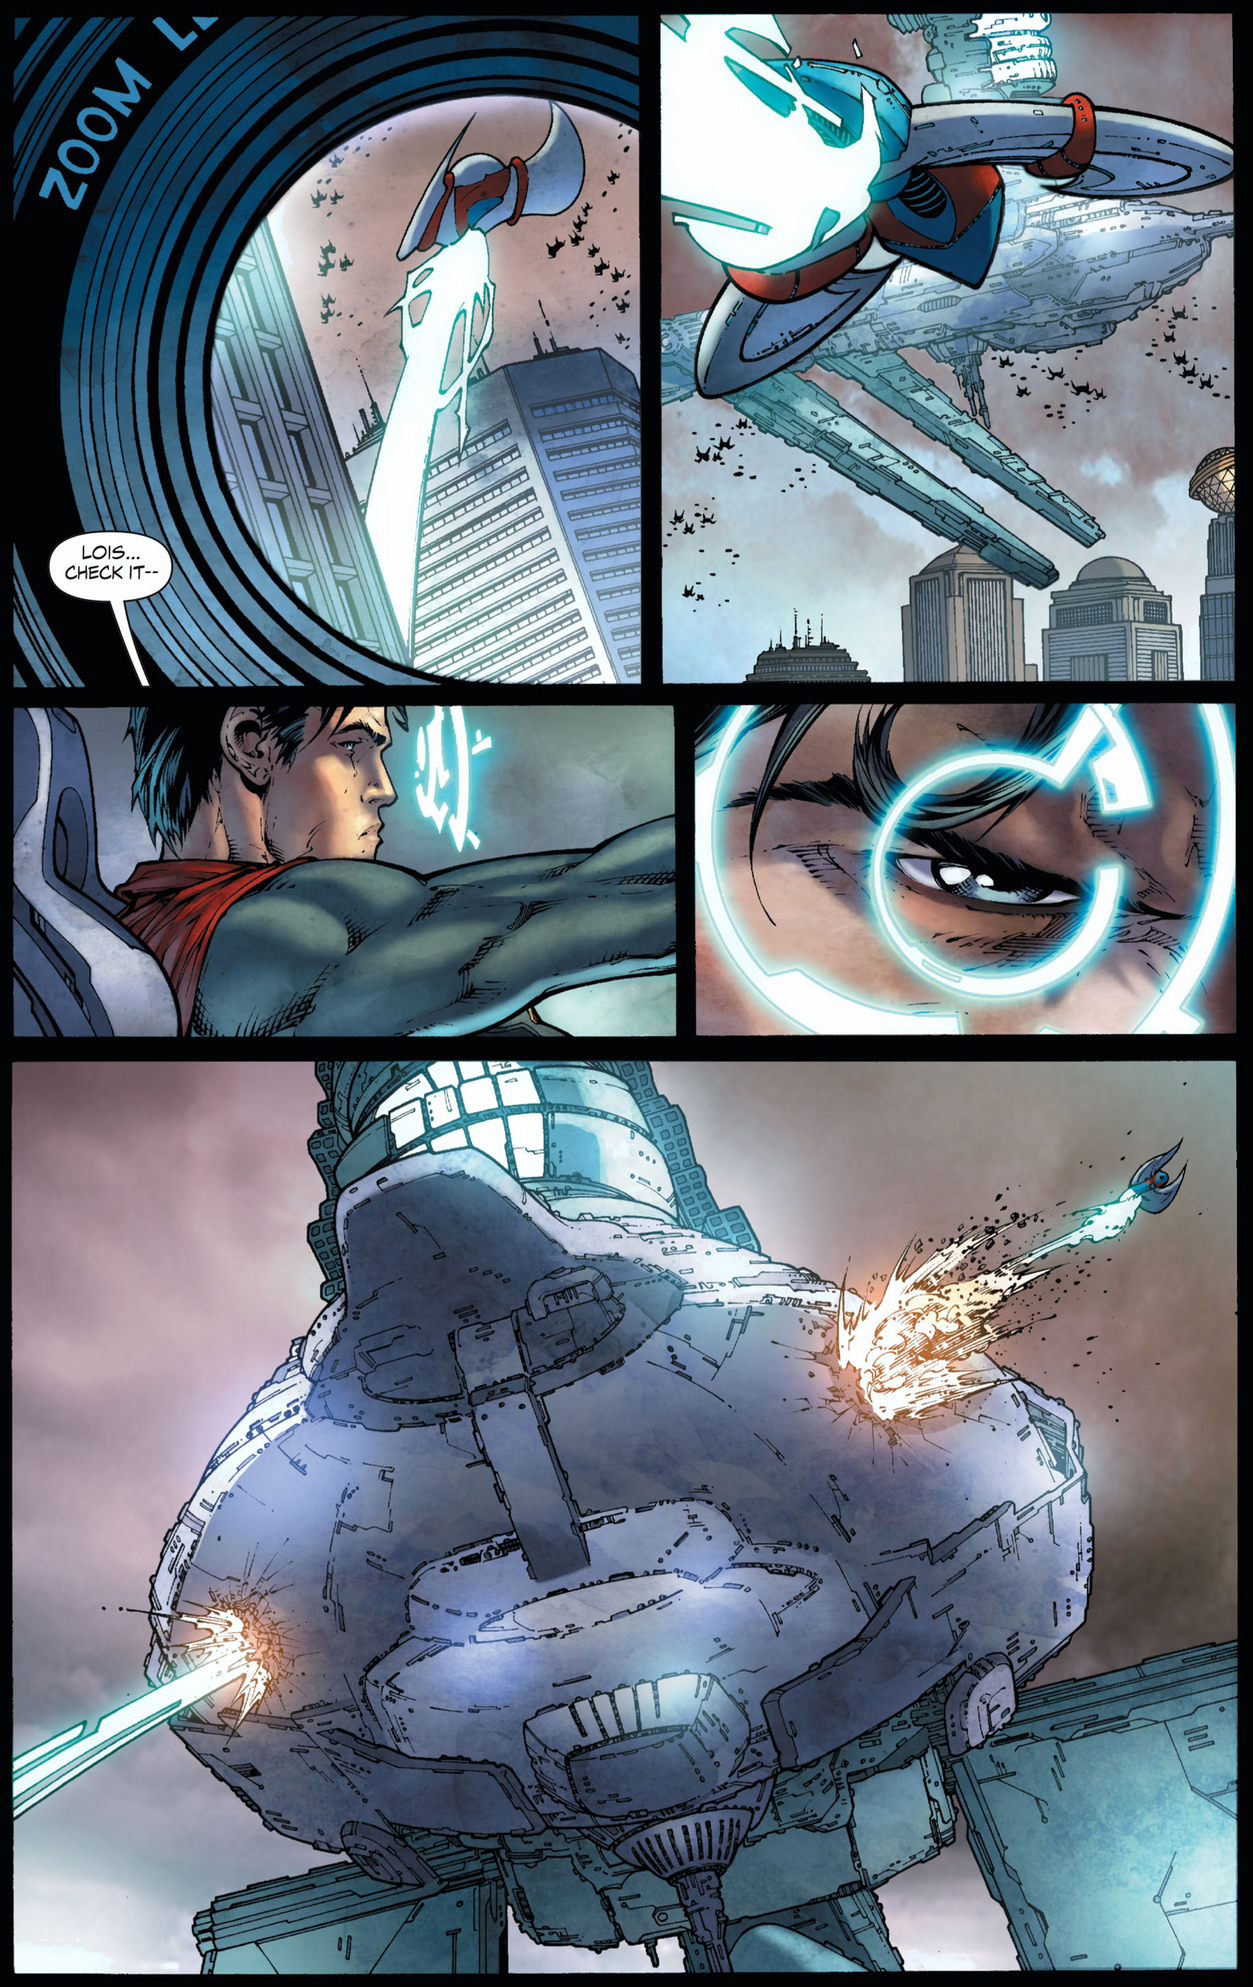 superman destroys tyrell's ship (earth 1)